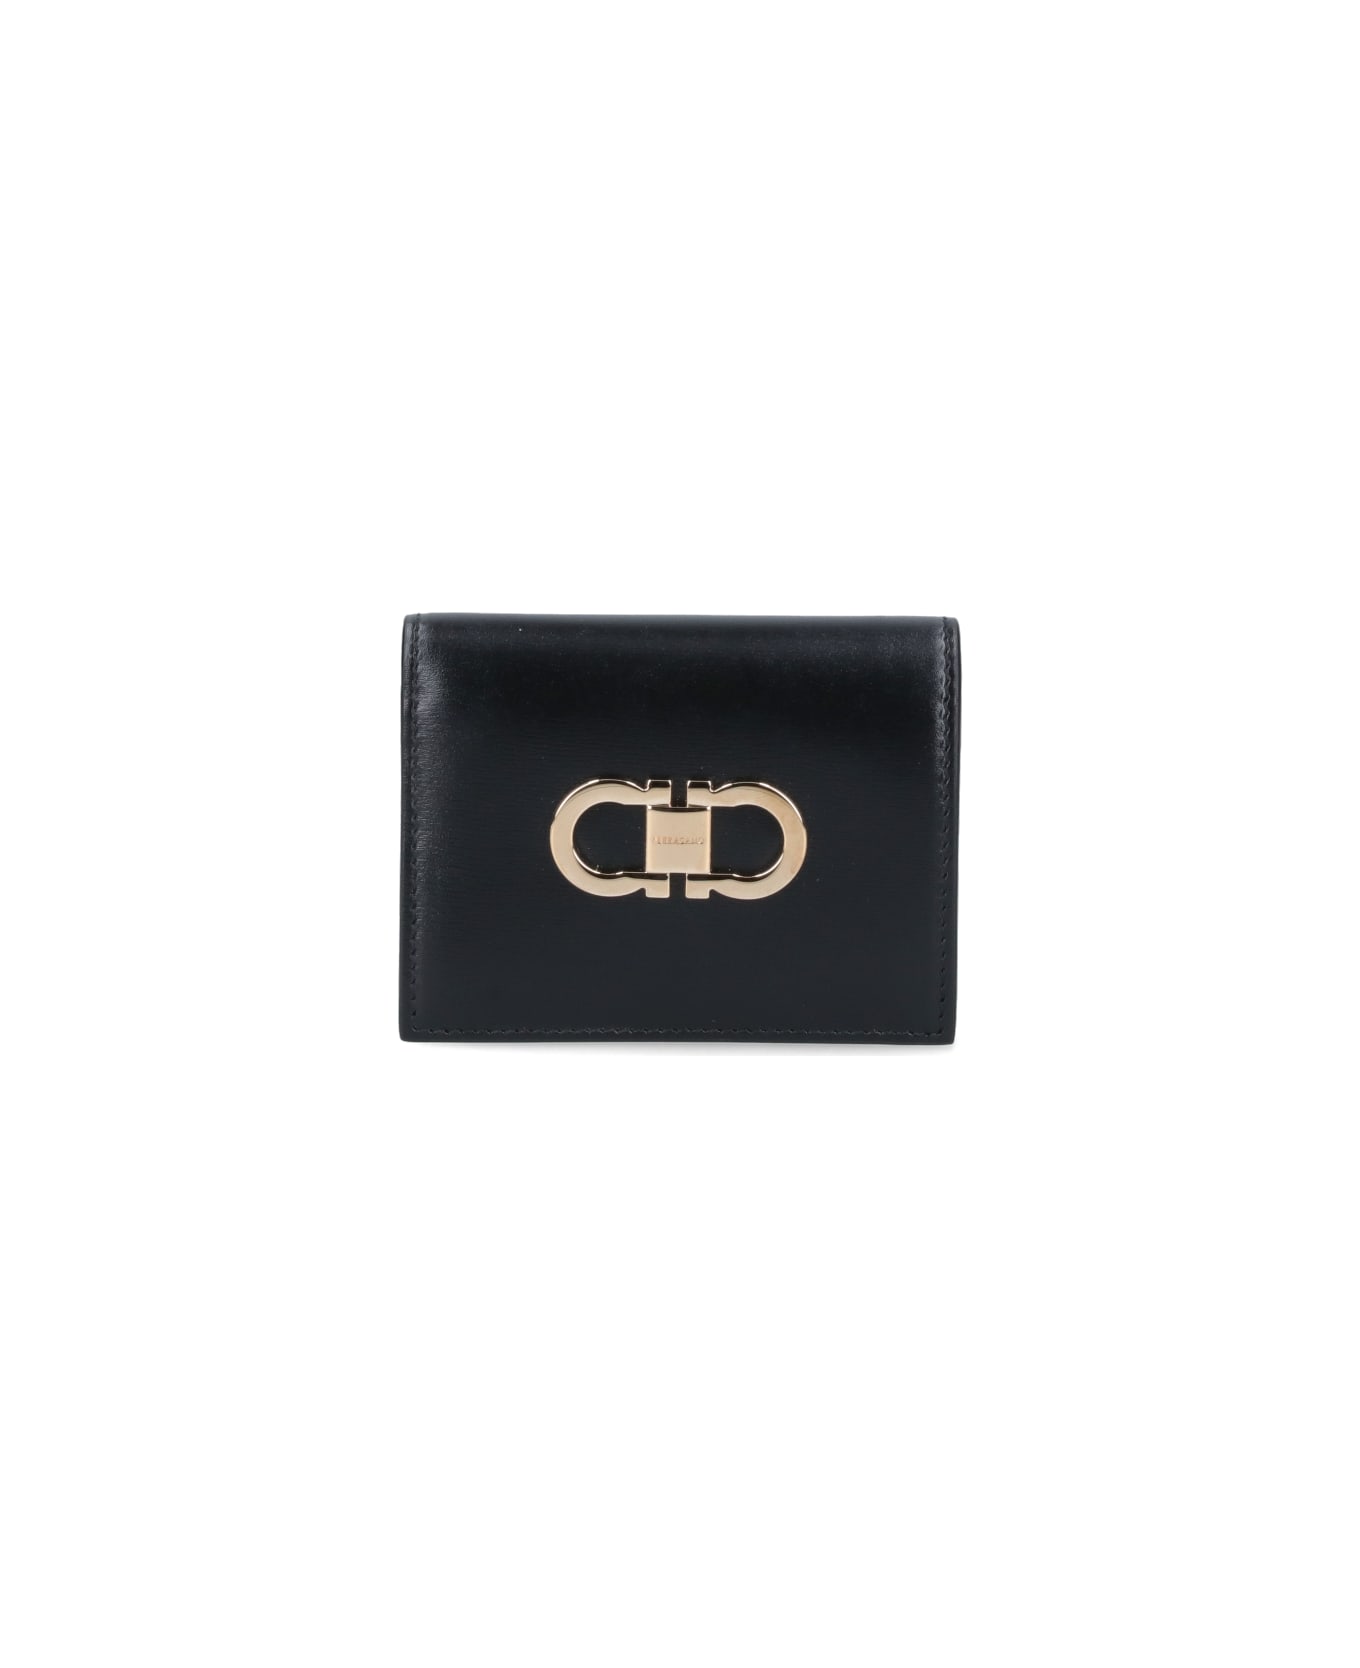 Ferragamo Compact Wallet "gancini" - Black  